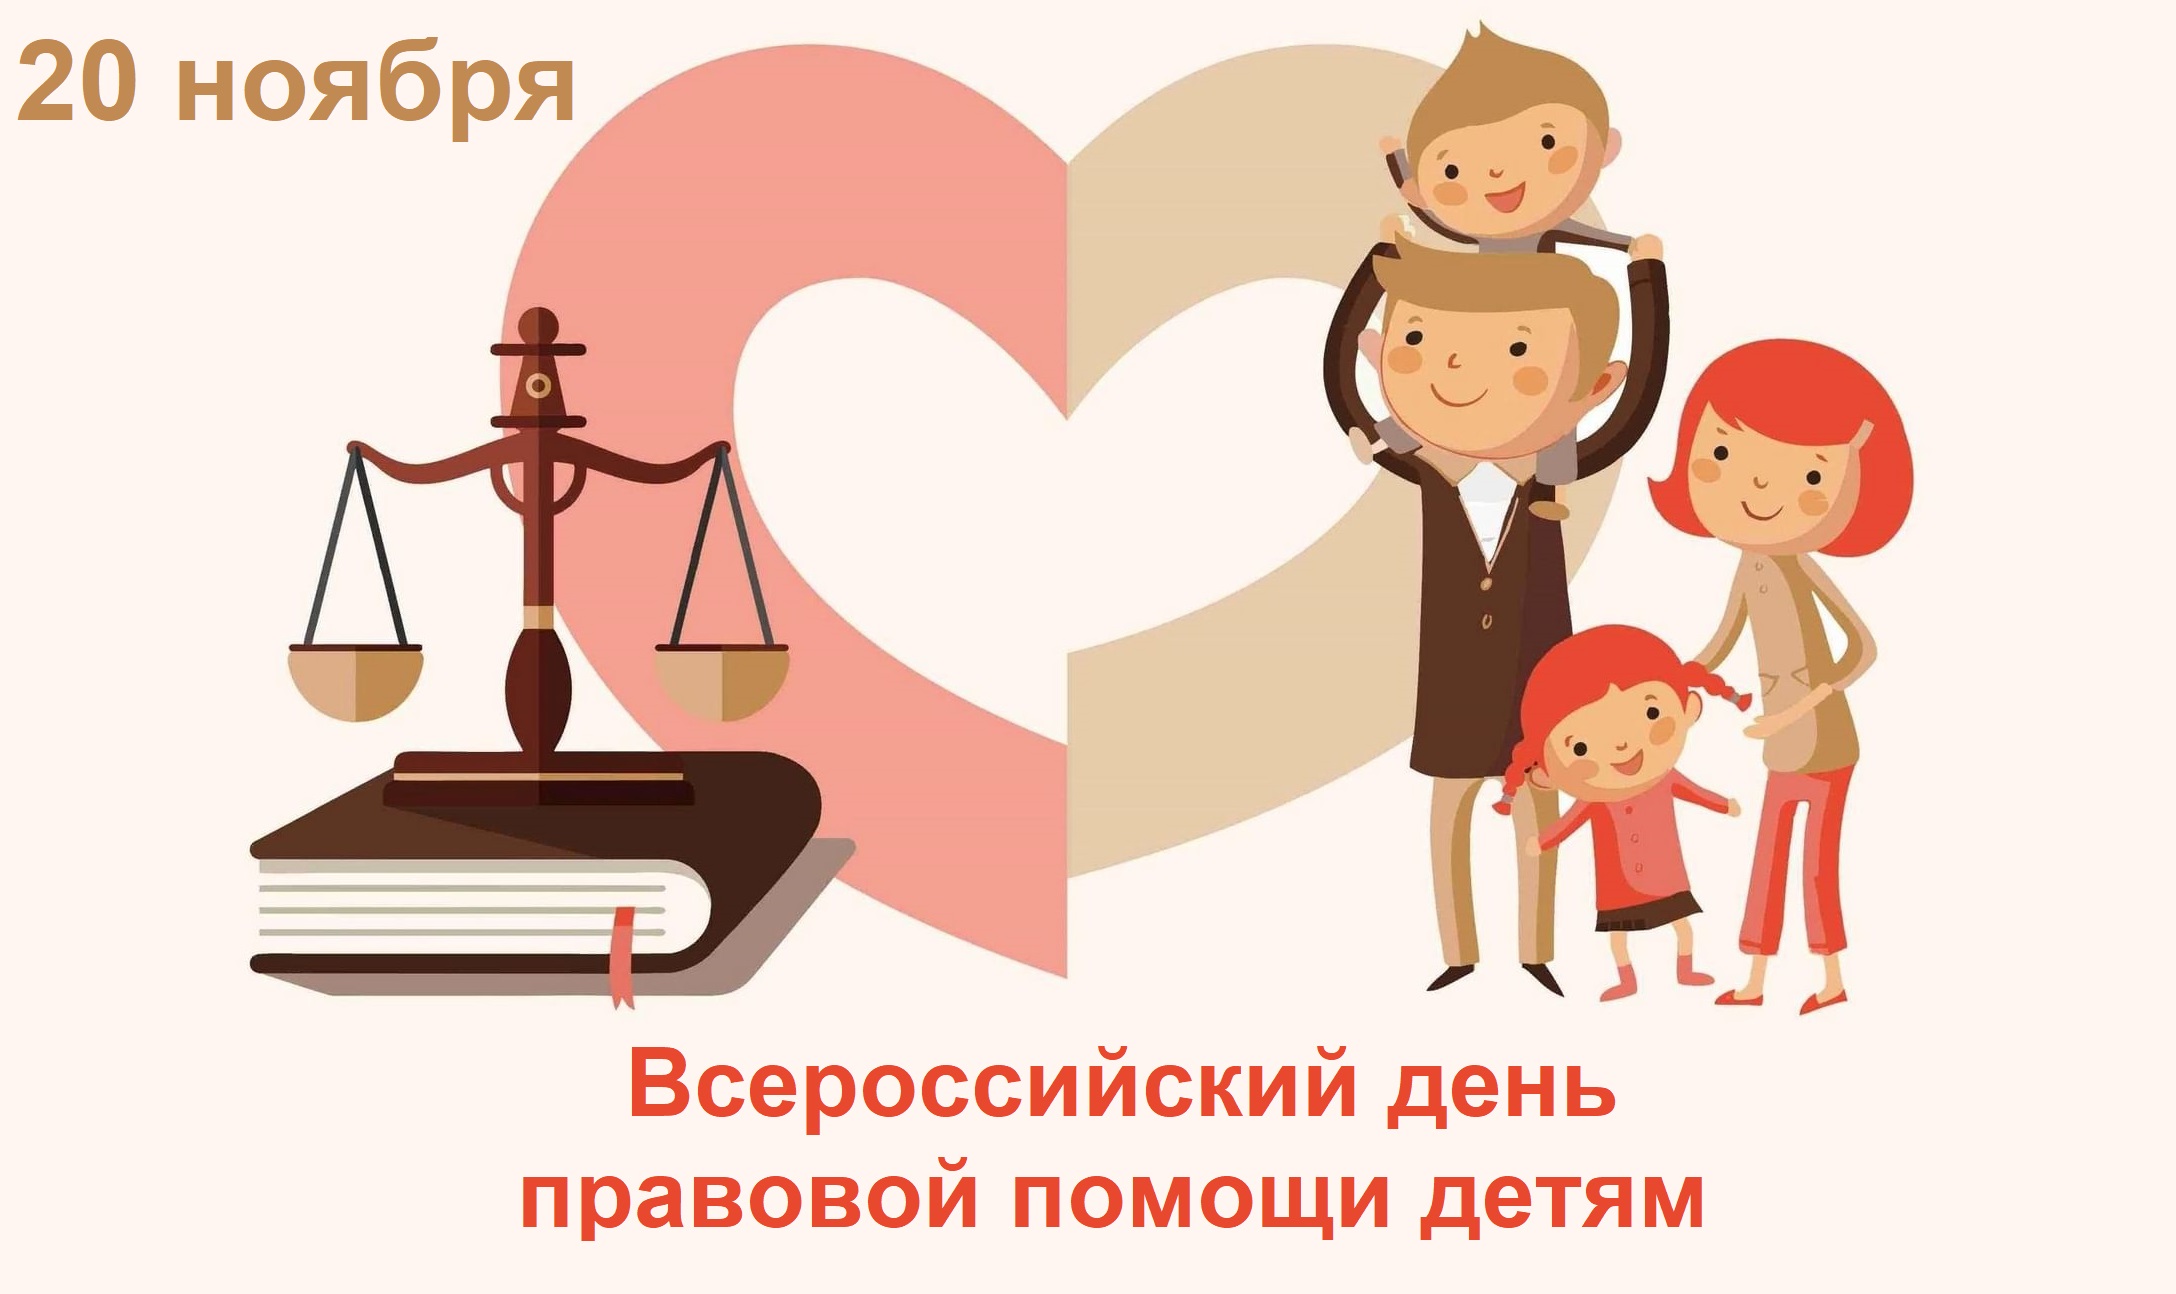 Работа пункта консультирования по правовым вопросам детства и родительства.